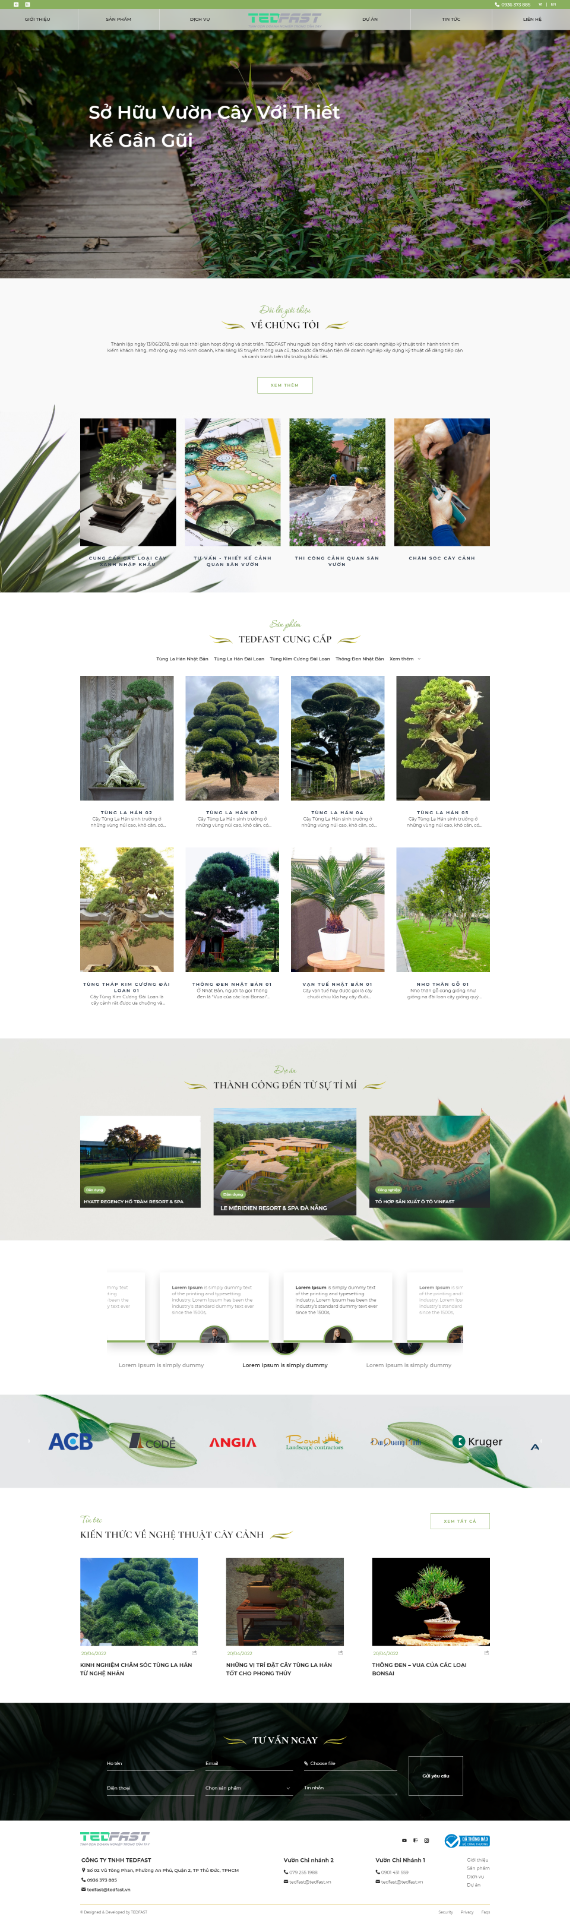 Website cho Công ty cung cấp cây cảnh, thiết kế và thi công cảnh quan sân vườn CIHG-02